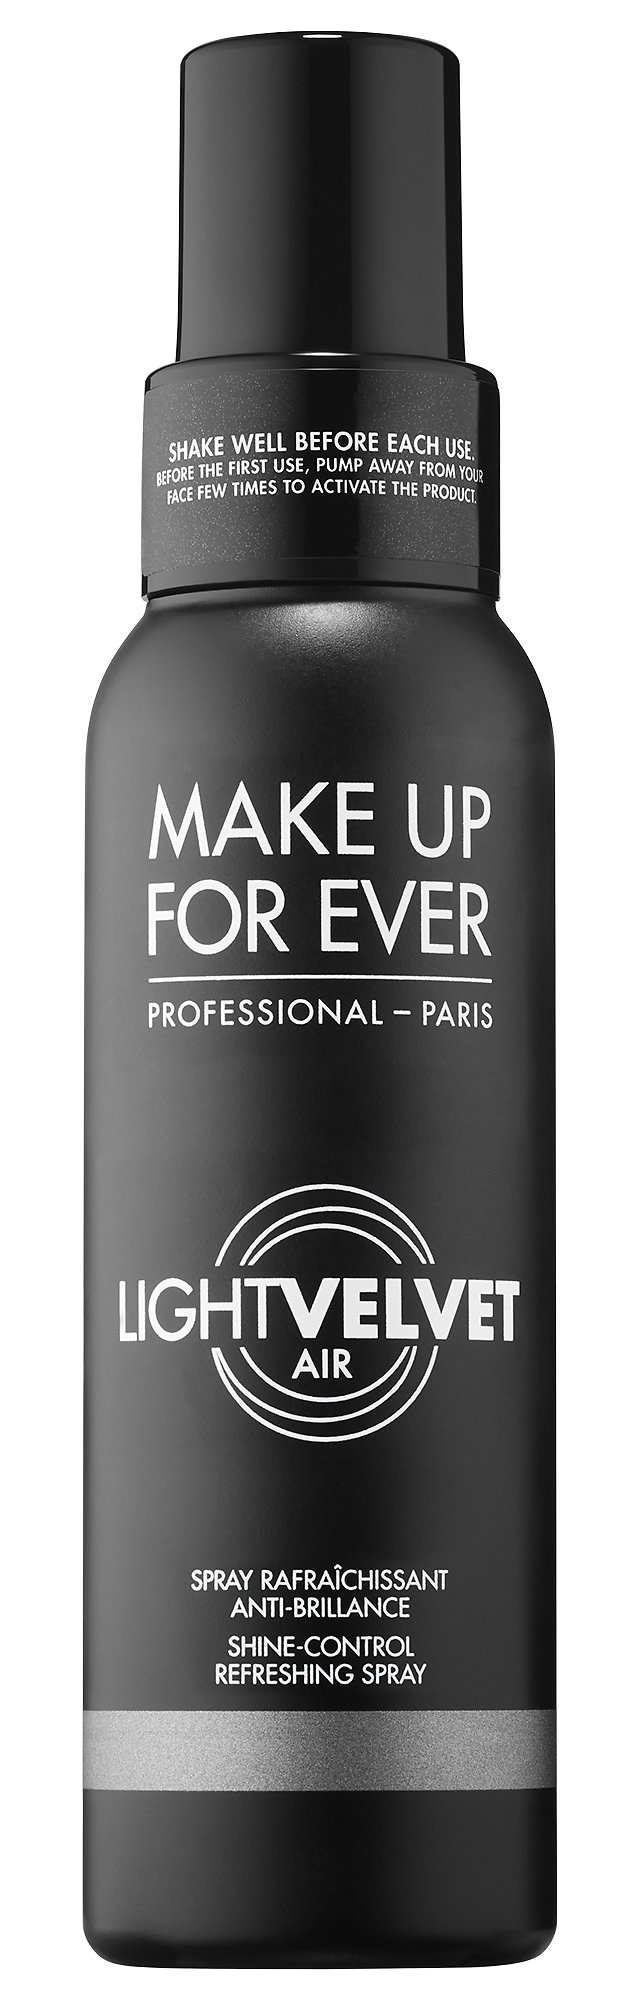 MAKE UP FOR EVER Light Velvet Air Shine-Control Refreshing Spray